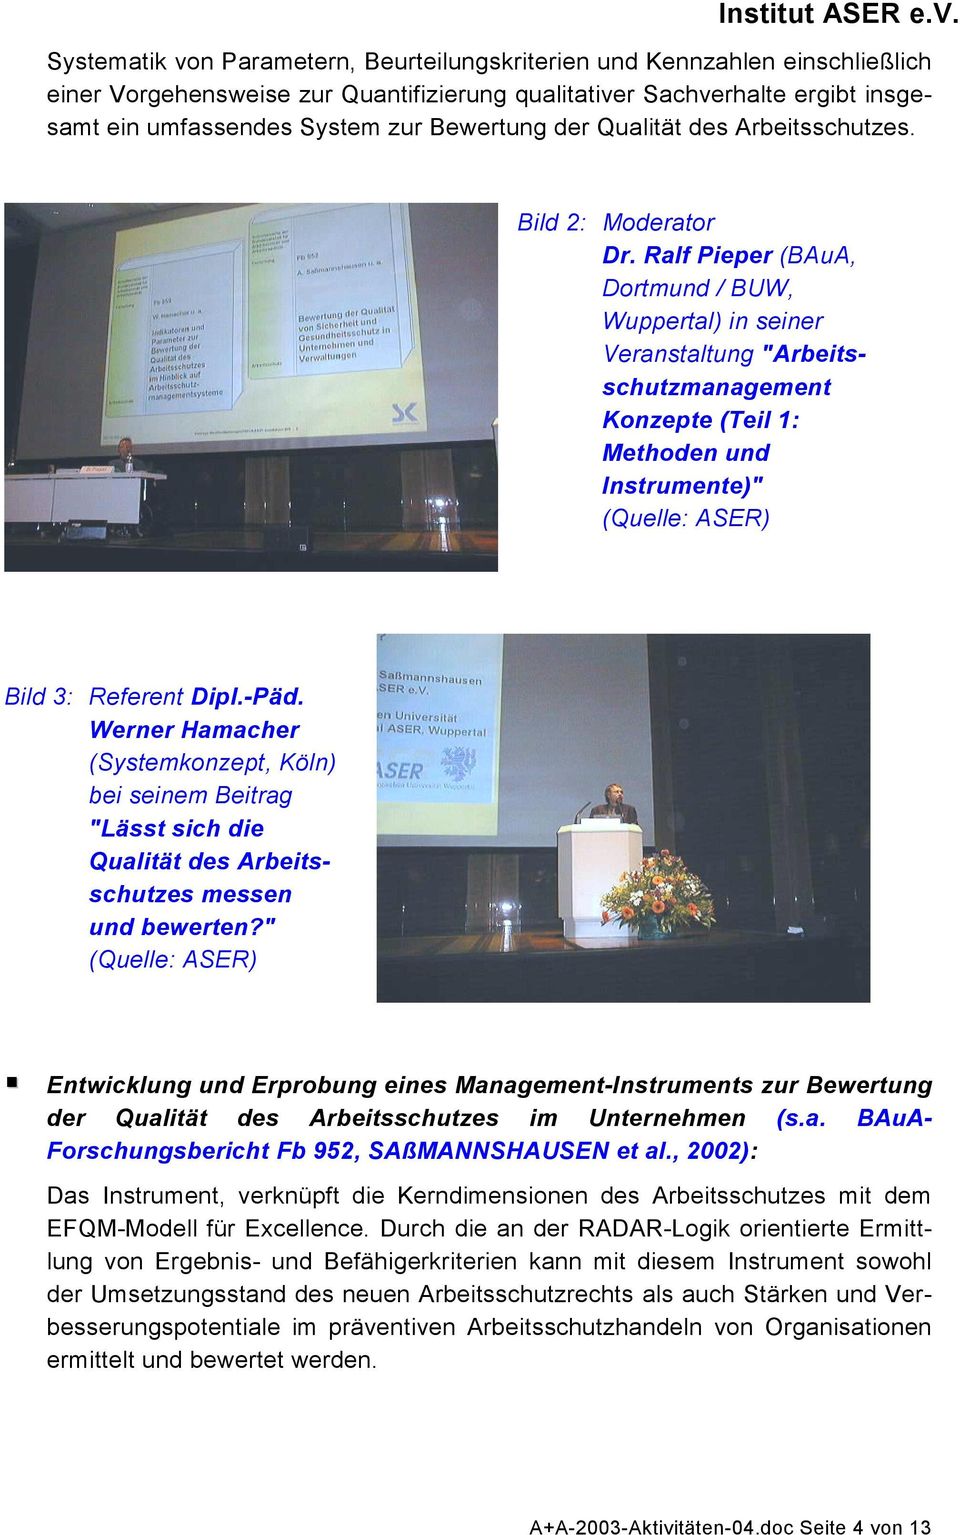 Ralf Pieper (BAuA, Dortmund / BUW, Wuppertal) in seiner Veranstaltung "Arbeitsschutzmanagement Konzepte (Teil 1: Methoden und Instrumente)" (Quelle: ASER) Bild 3: Referent Dipl.-Päd.